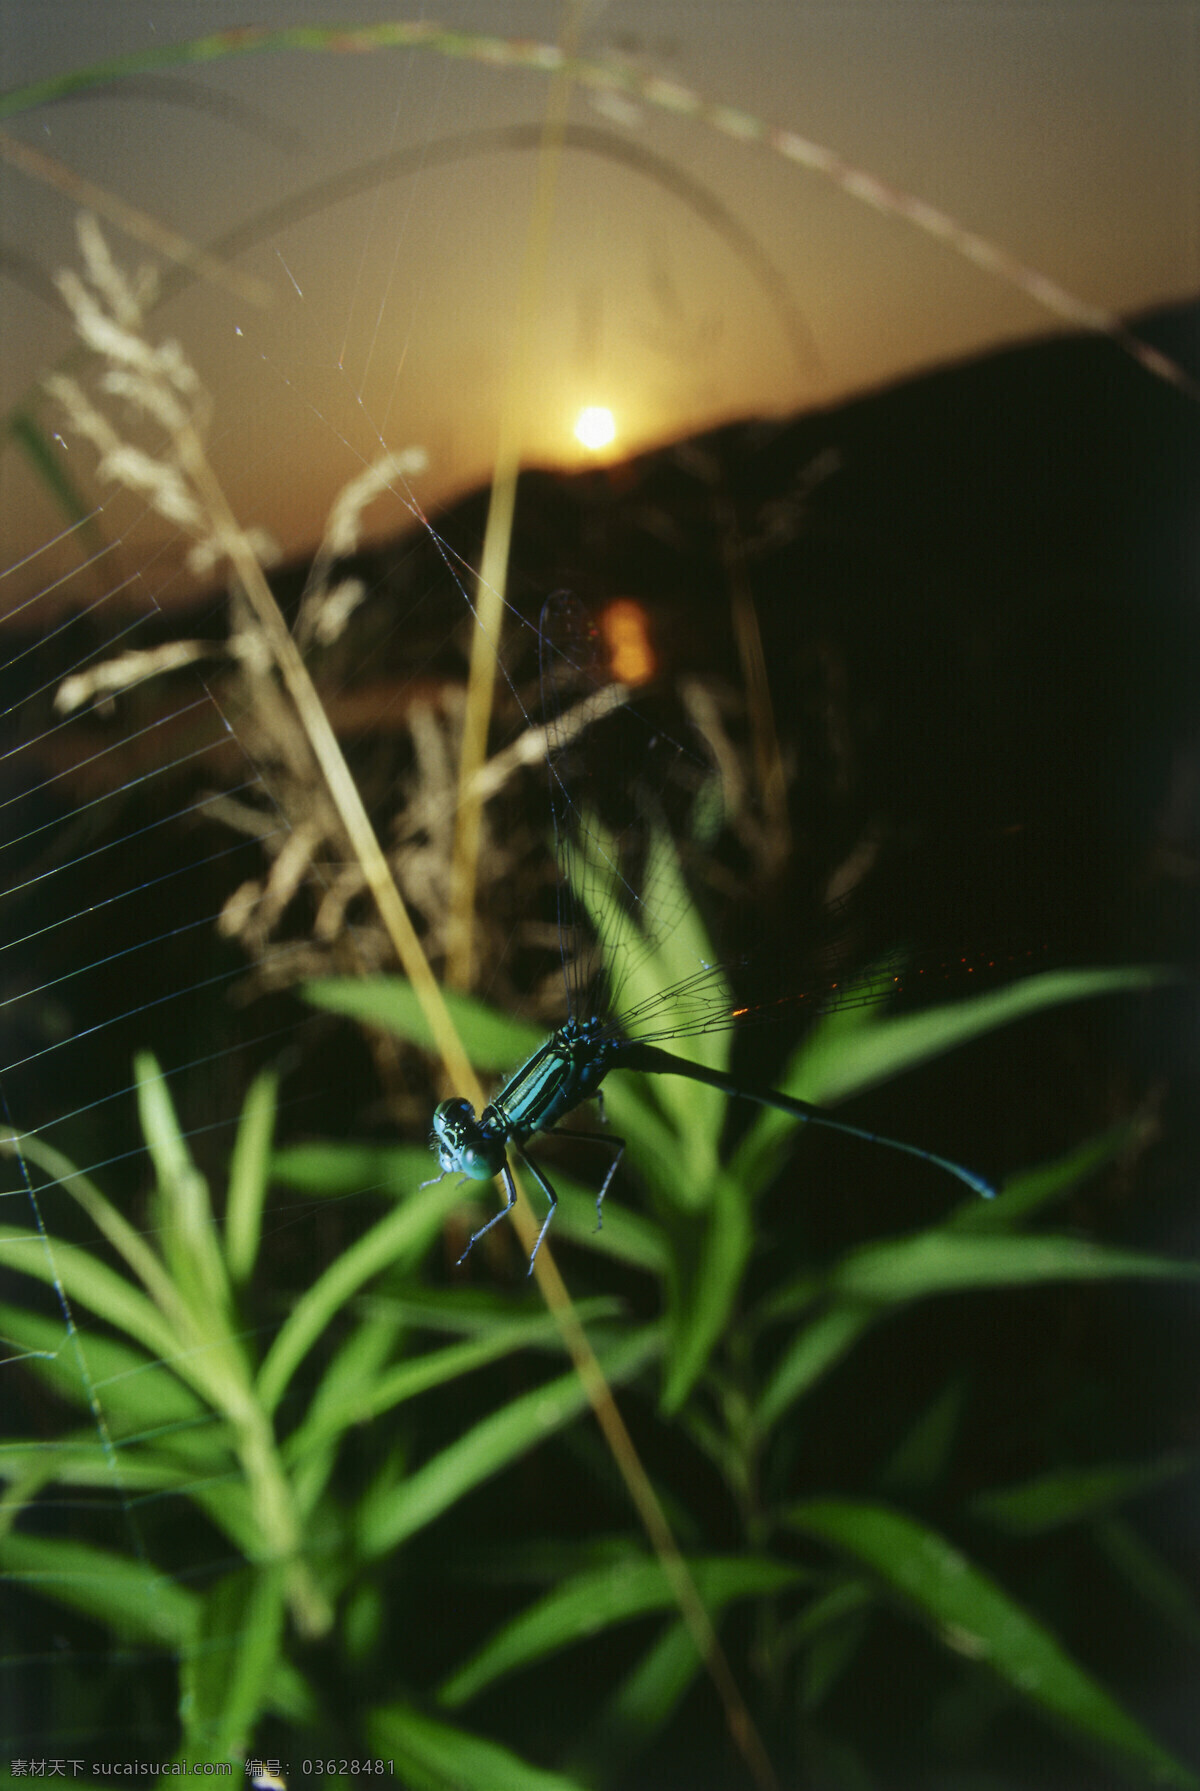 蜘蛛 网上 蜻蜓 蜻蜓摄影 动物 昆虫 自然风光 大自然 风景 风光 田野 野外 草 摄影图片 草地 树叶 叶子 自然风景 自然景观 黑色